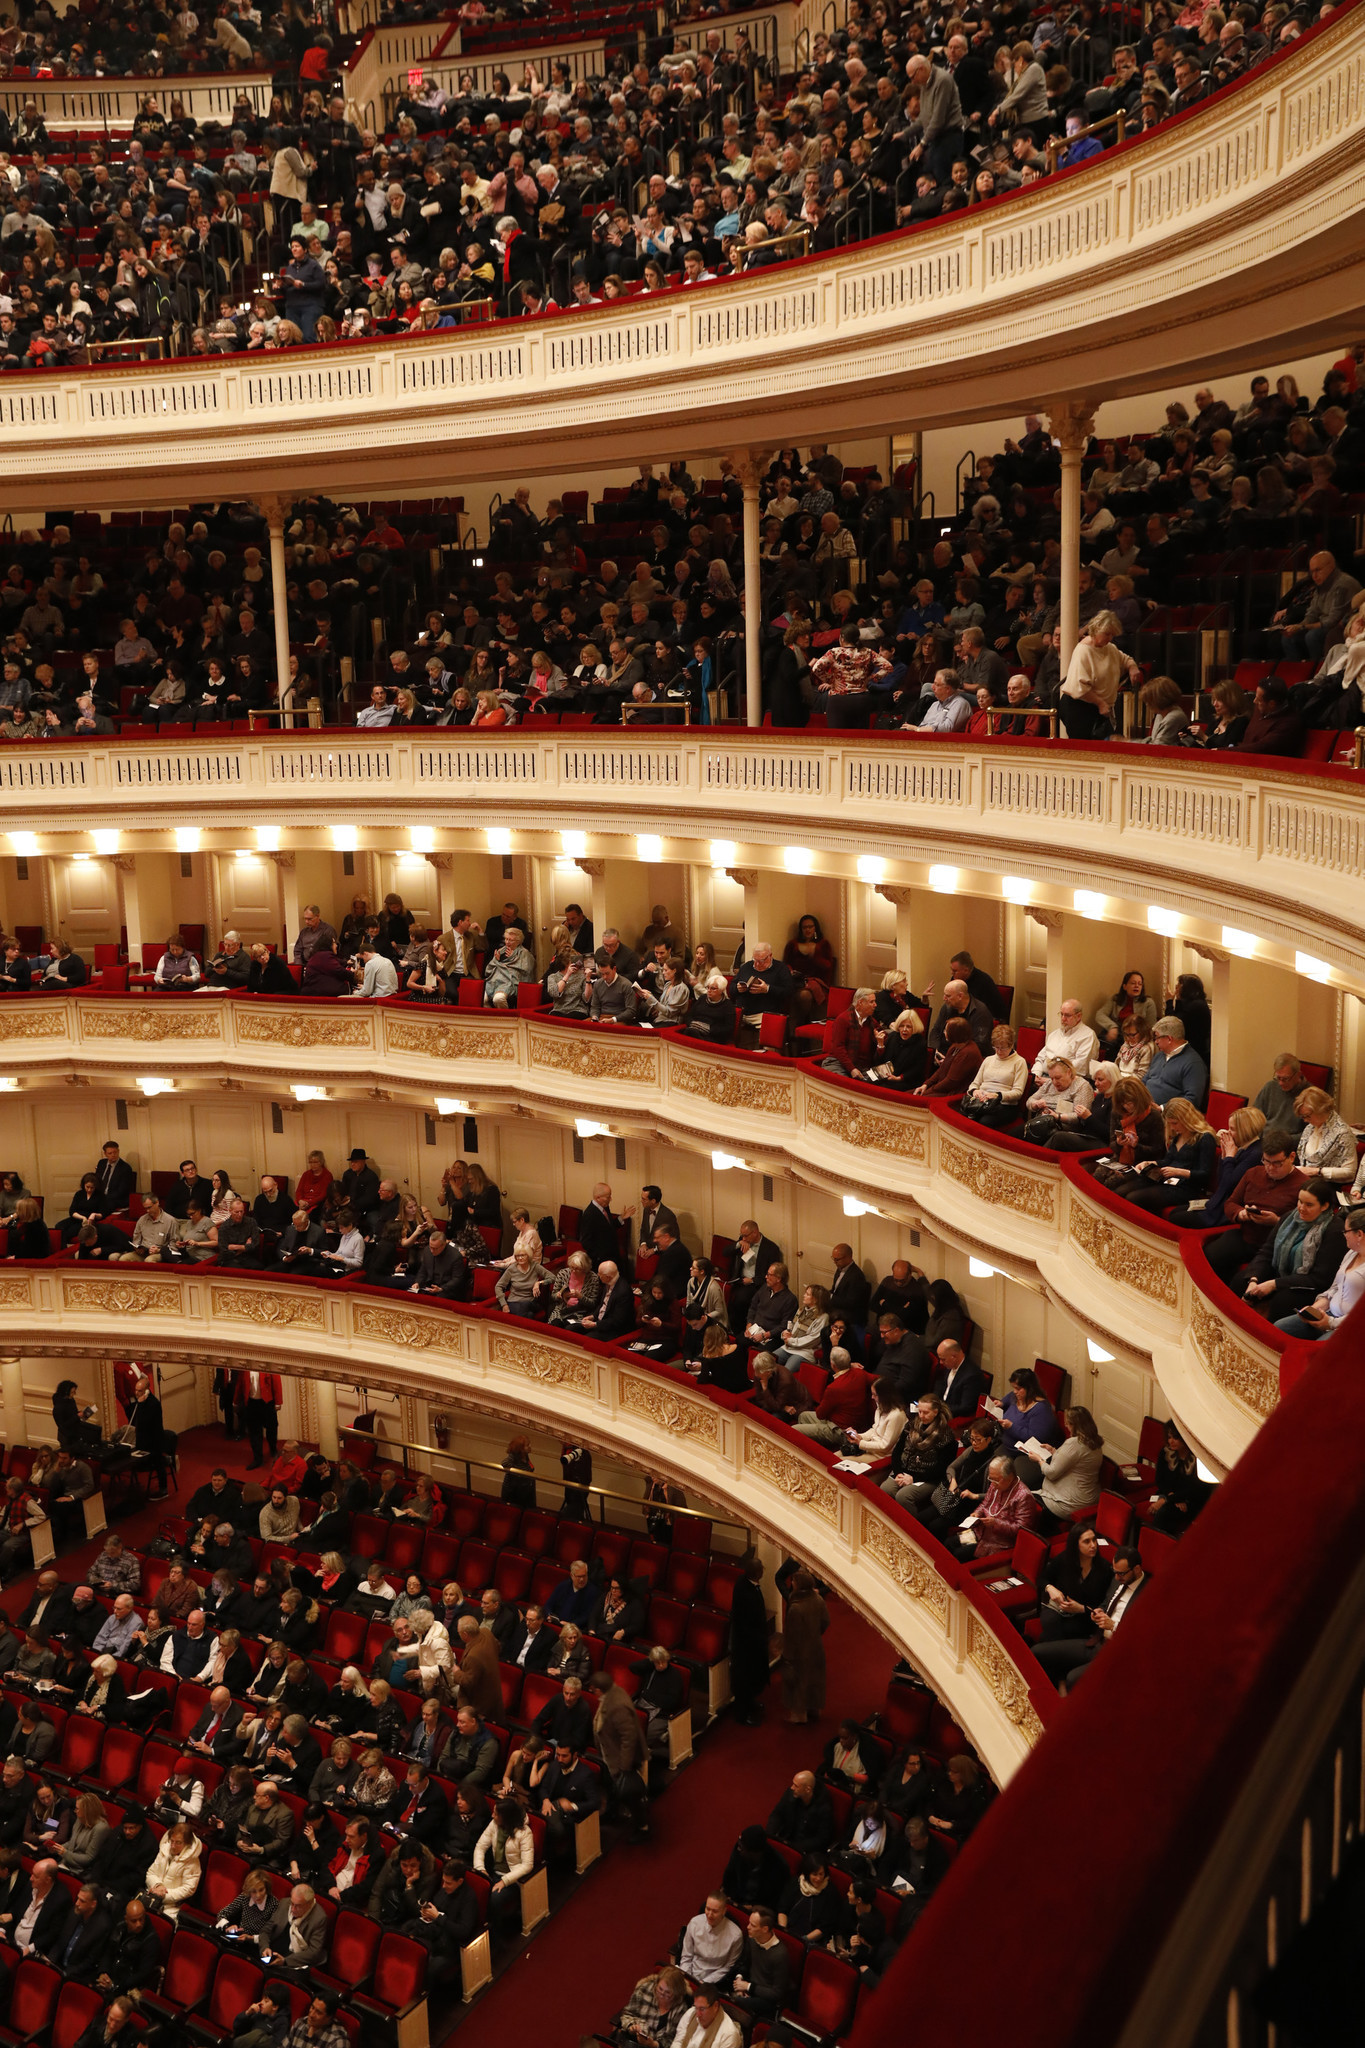 Carnegie Hall audience